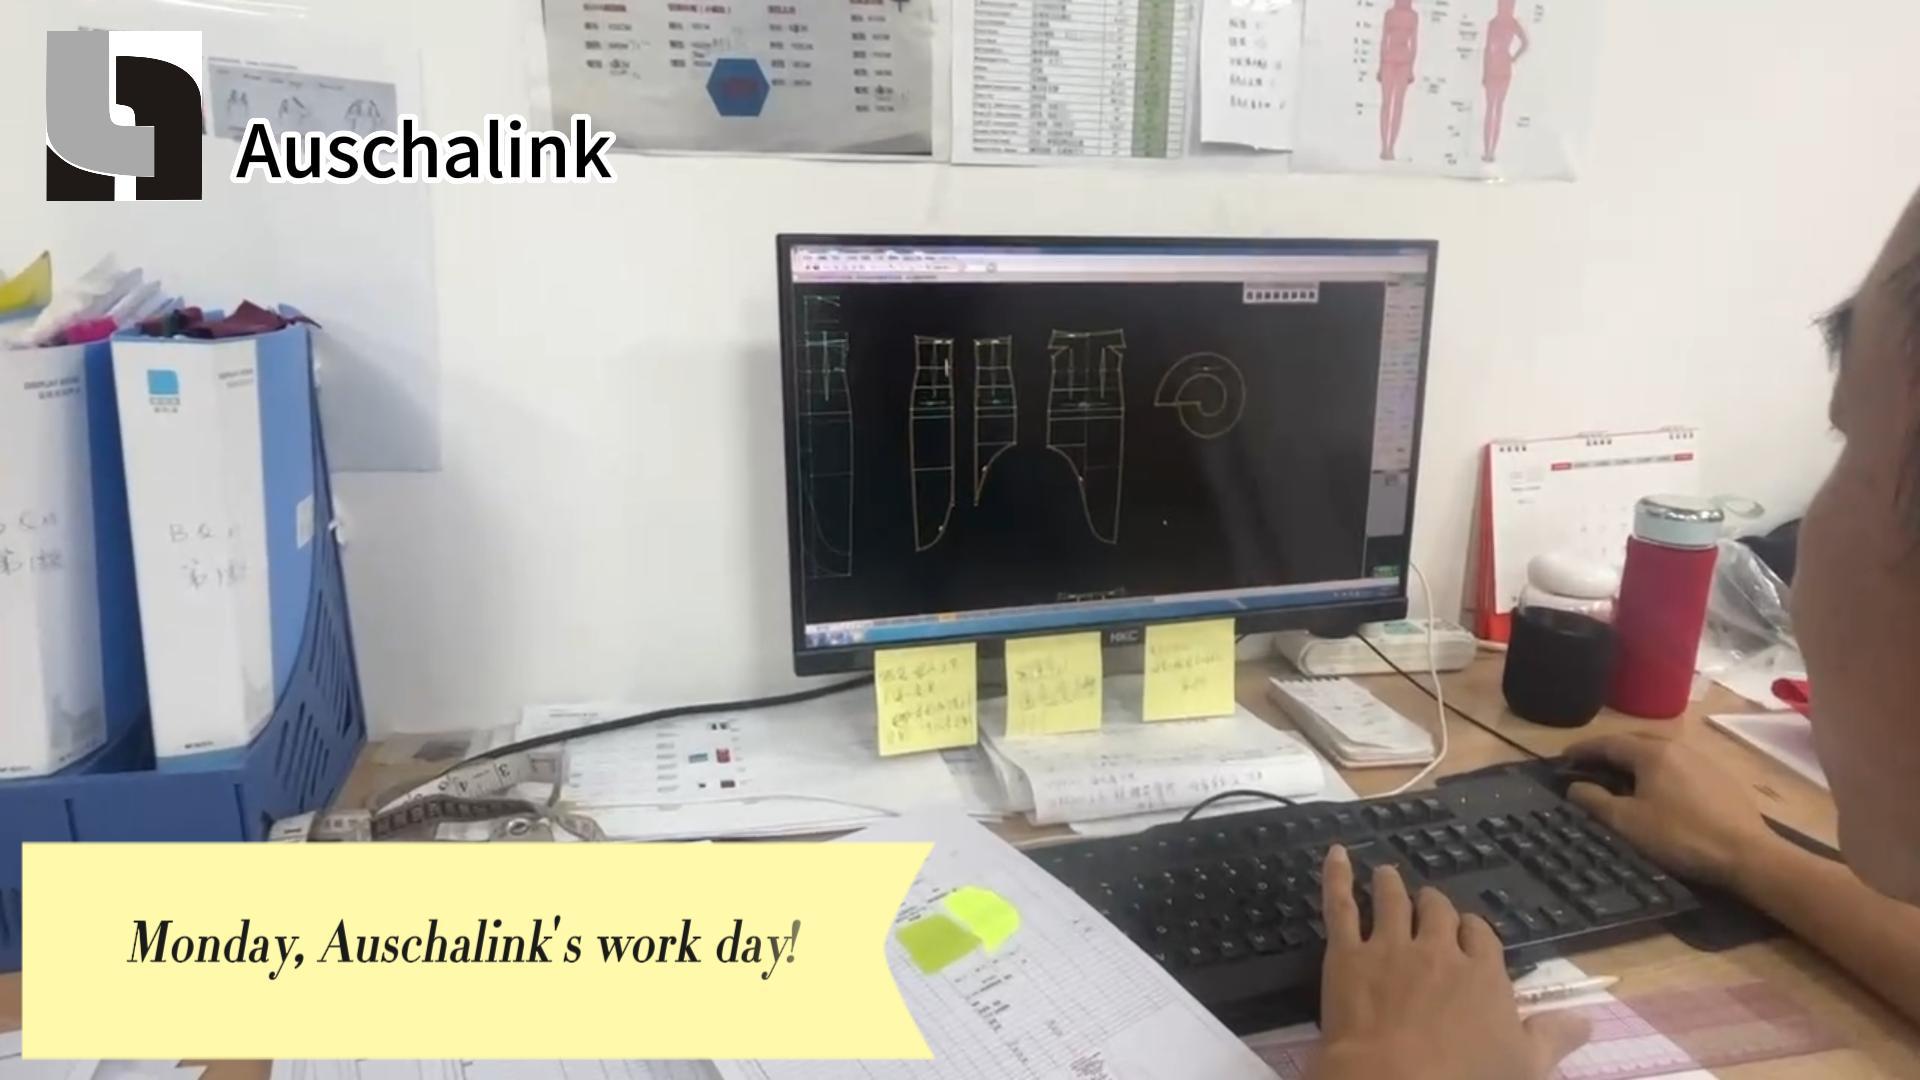 Auschalink ၏ အလုပ်နားရက် ဗီဒီယို - ဖက်ရှင်လုပ်ငန်းစဉ်သို့ ခိုးကြည့်ခြင်း။